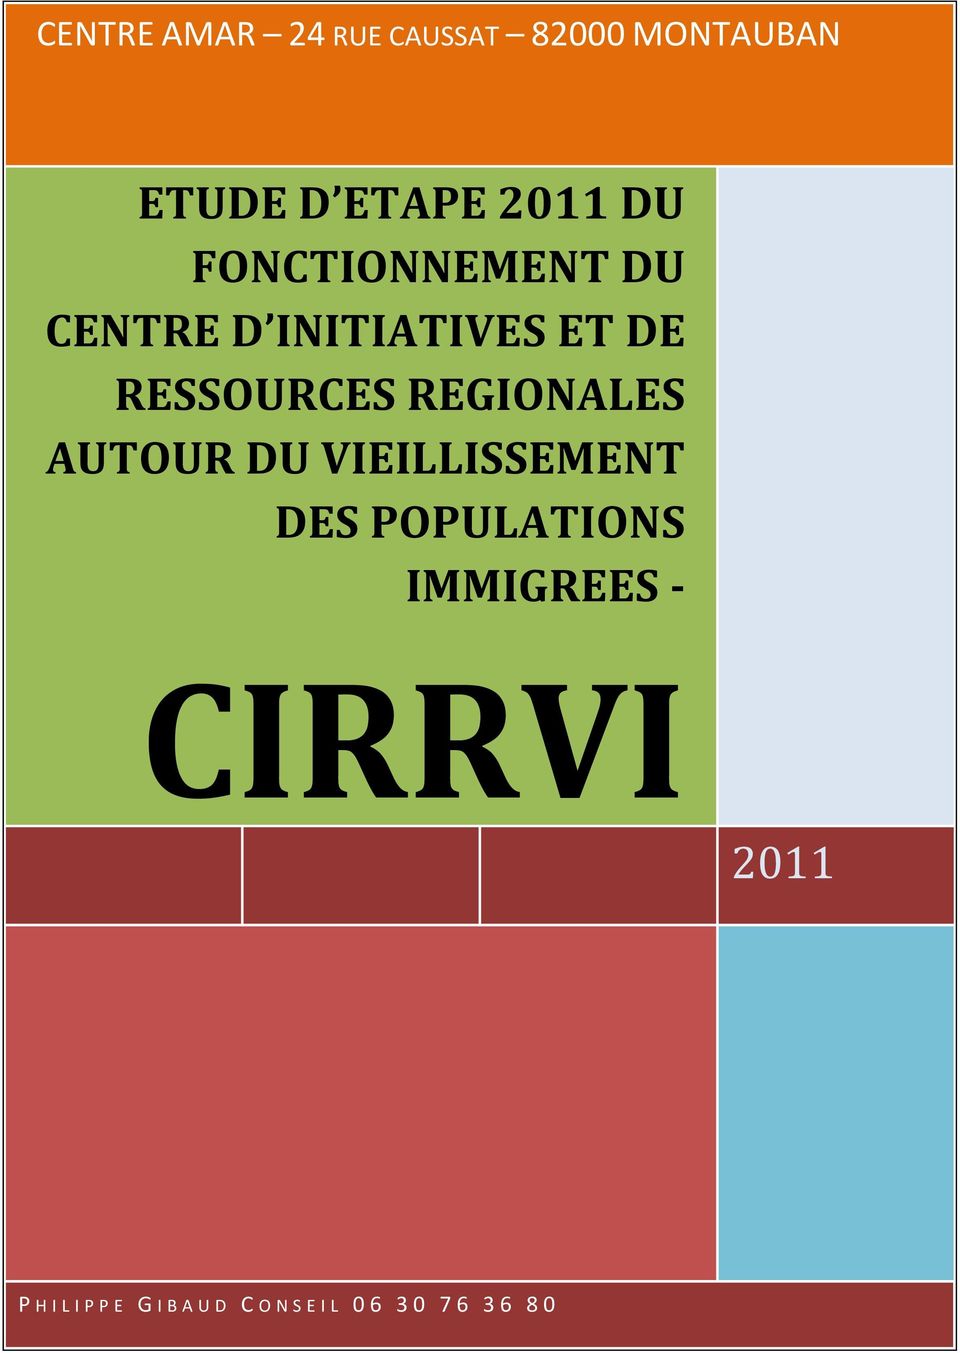 REGIONALES AUTOUR DU VIEILLISSEMENT DES POPULATIONS IMMIGREES -